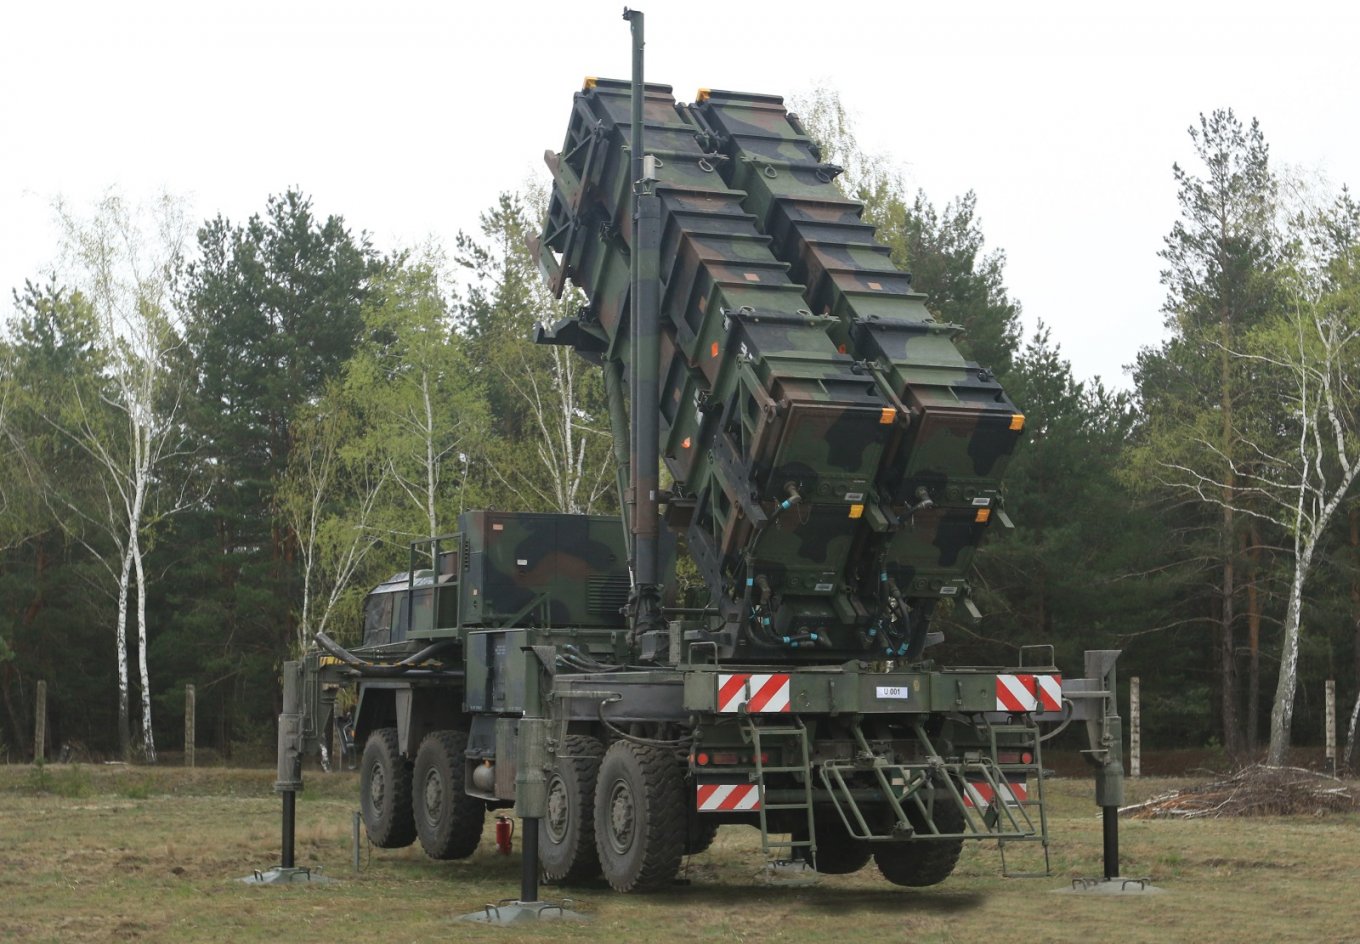 Patriot air defense system in Ukraine